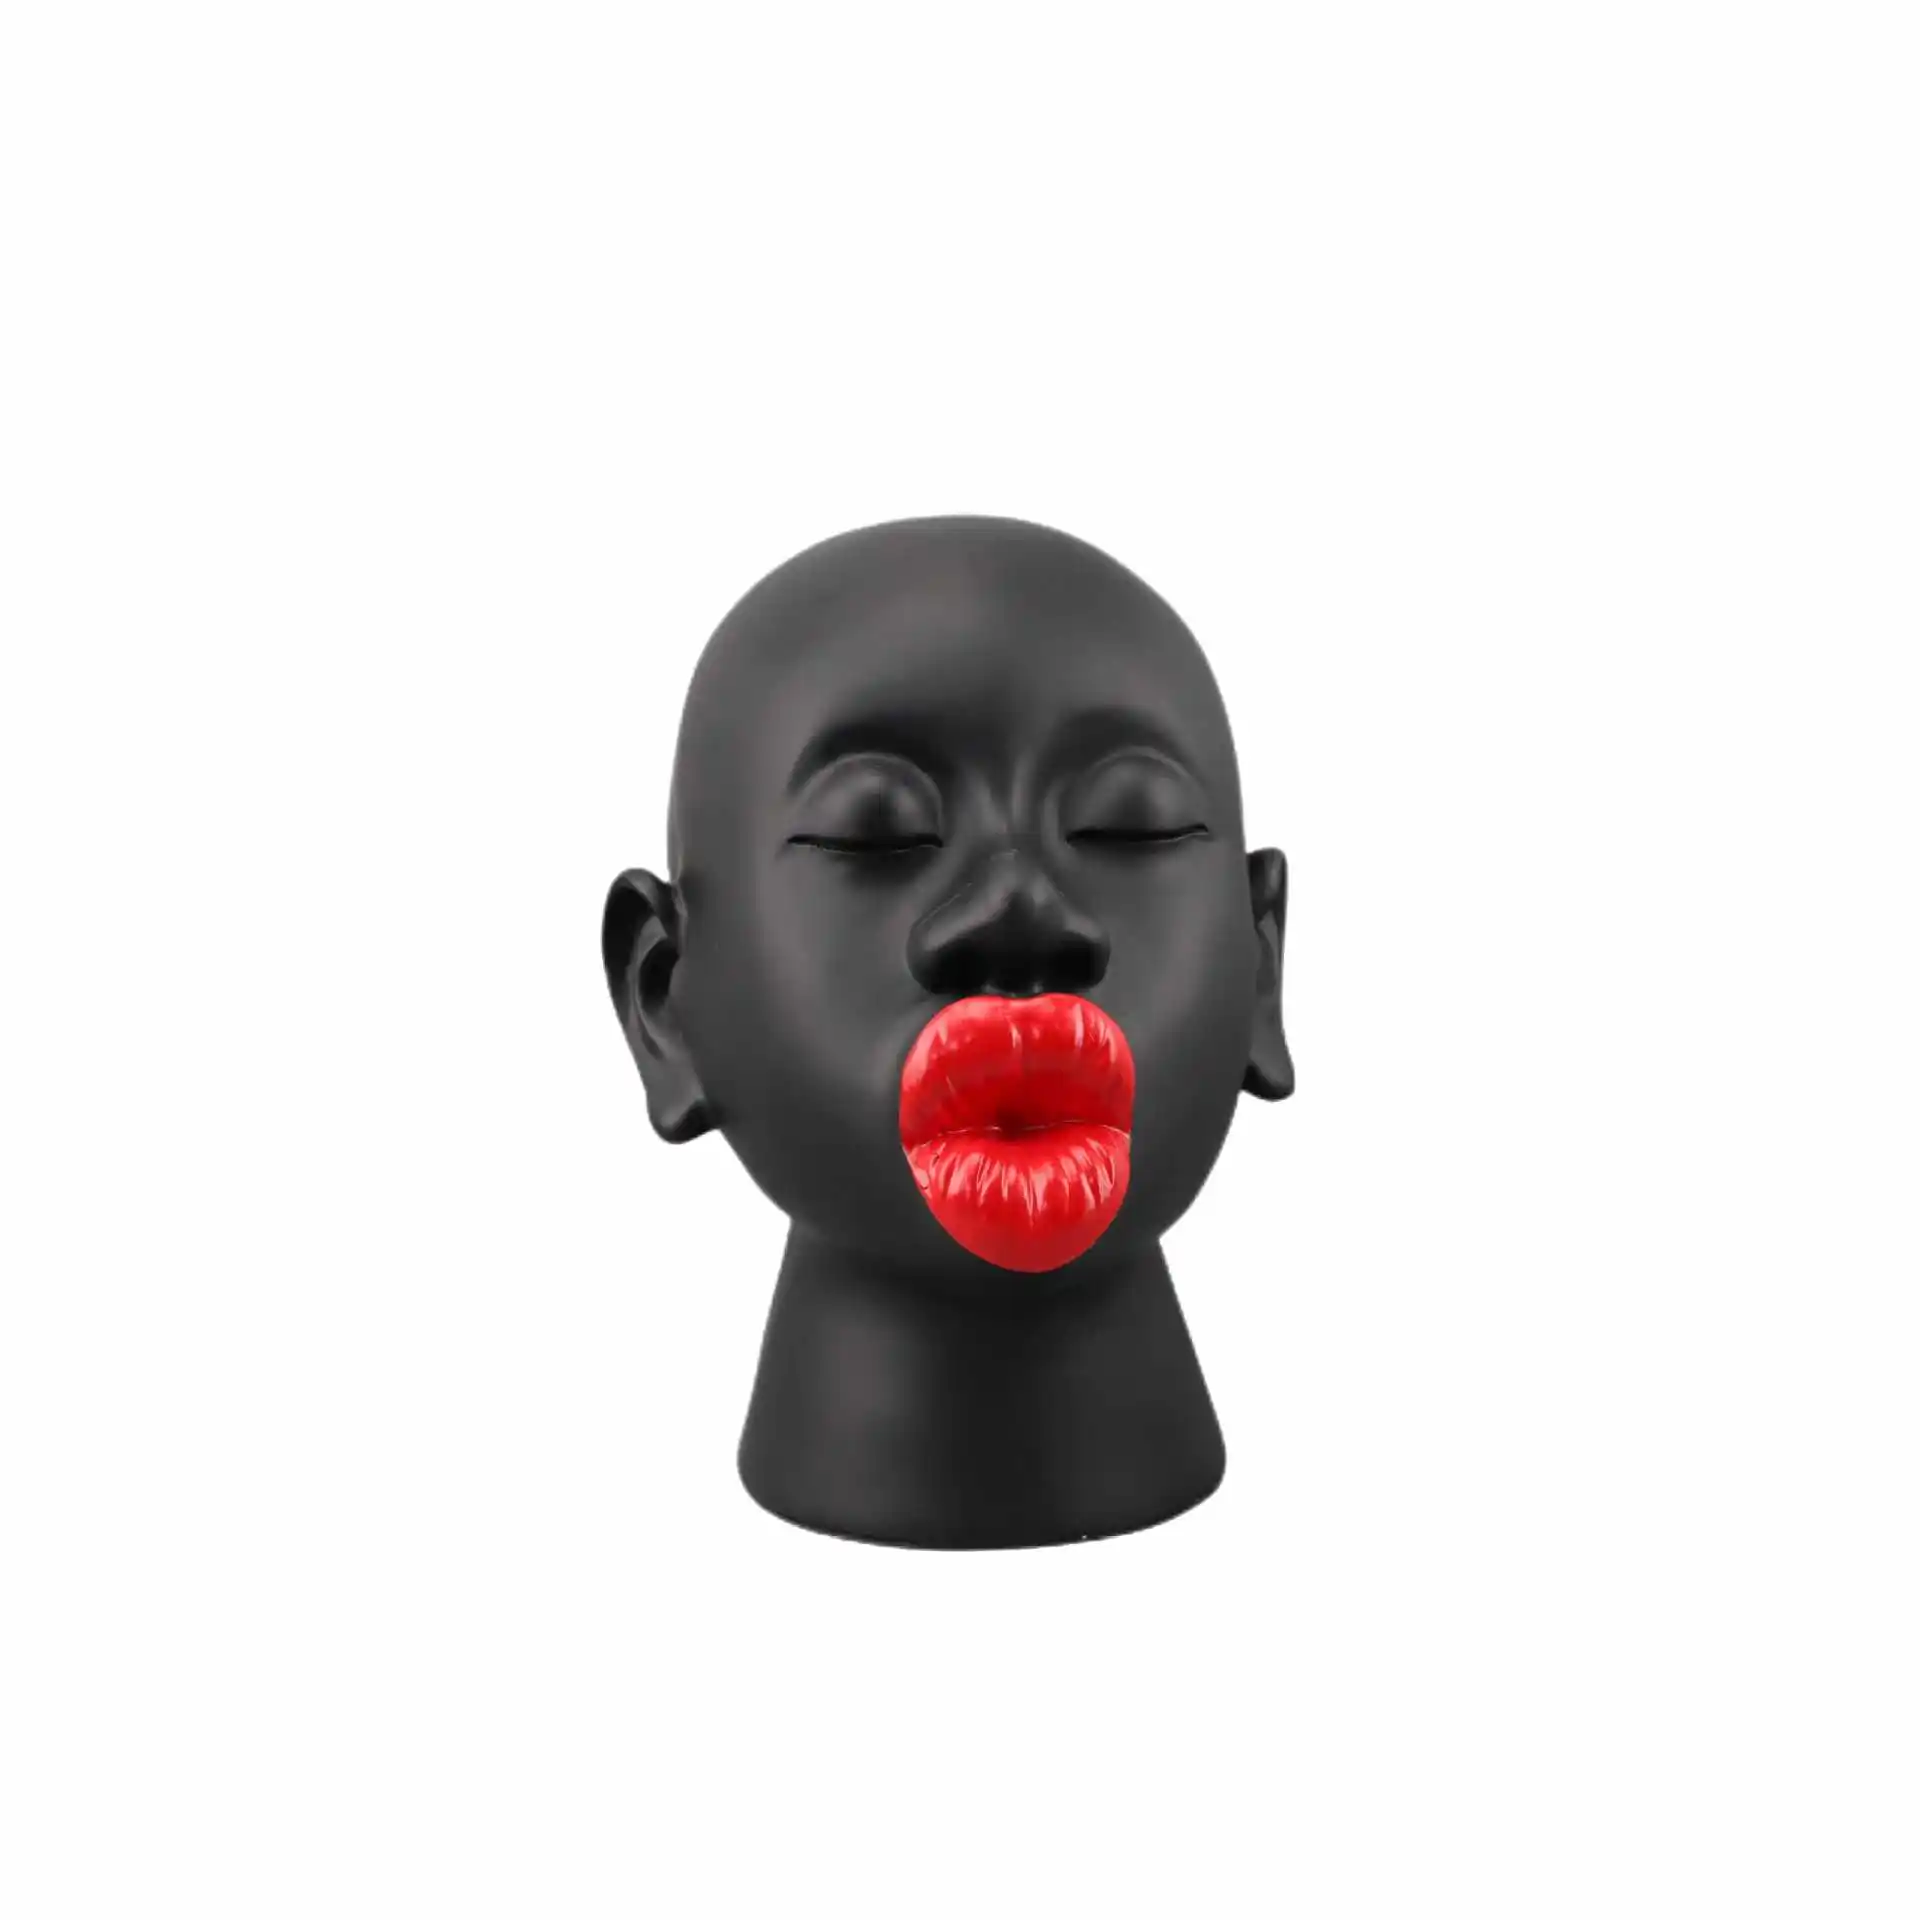 Arte moderno simple mujeres africanas grandes labios rojos hogar sala de estar decoración pieza resina artesanía escultura